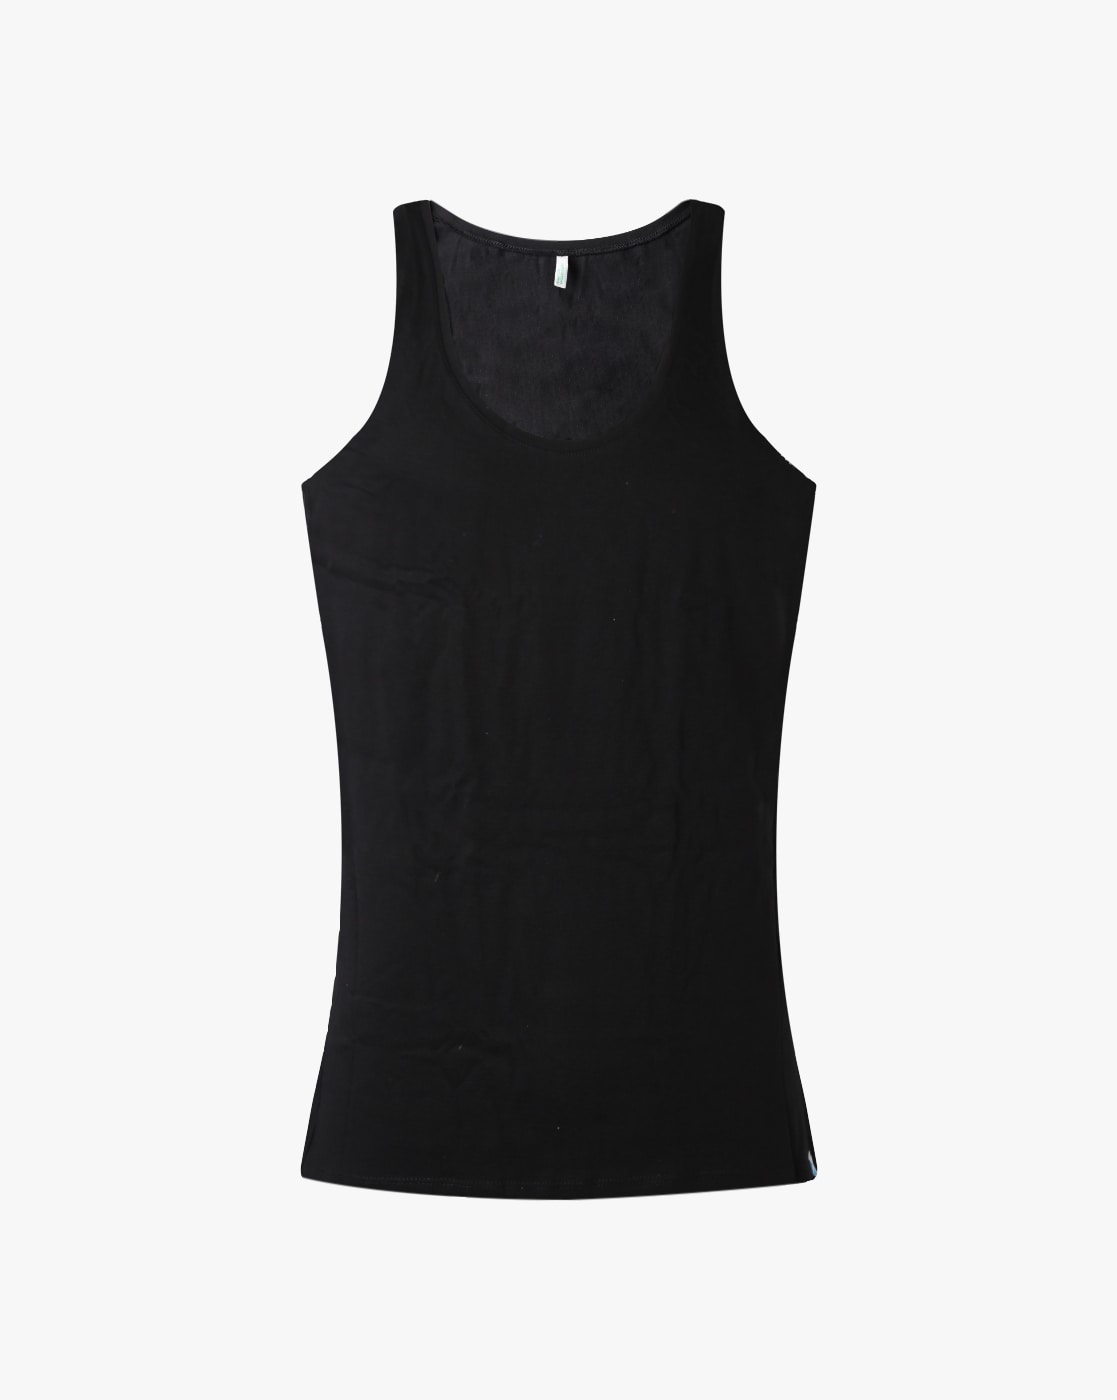 Plain Round Neck Men Black Cotton Innerwear Vests, Sleeveless Vest at Rs  145/piece in Nagpur